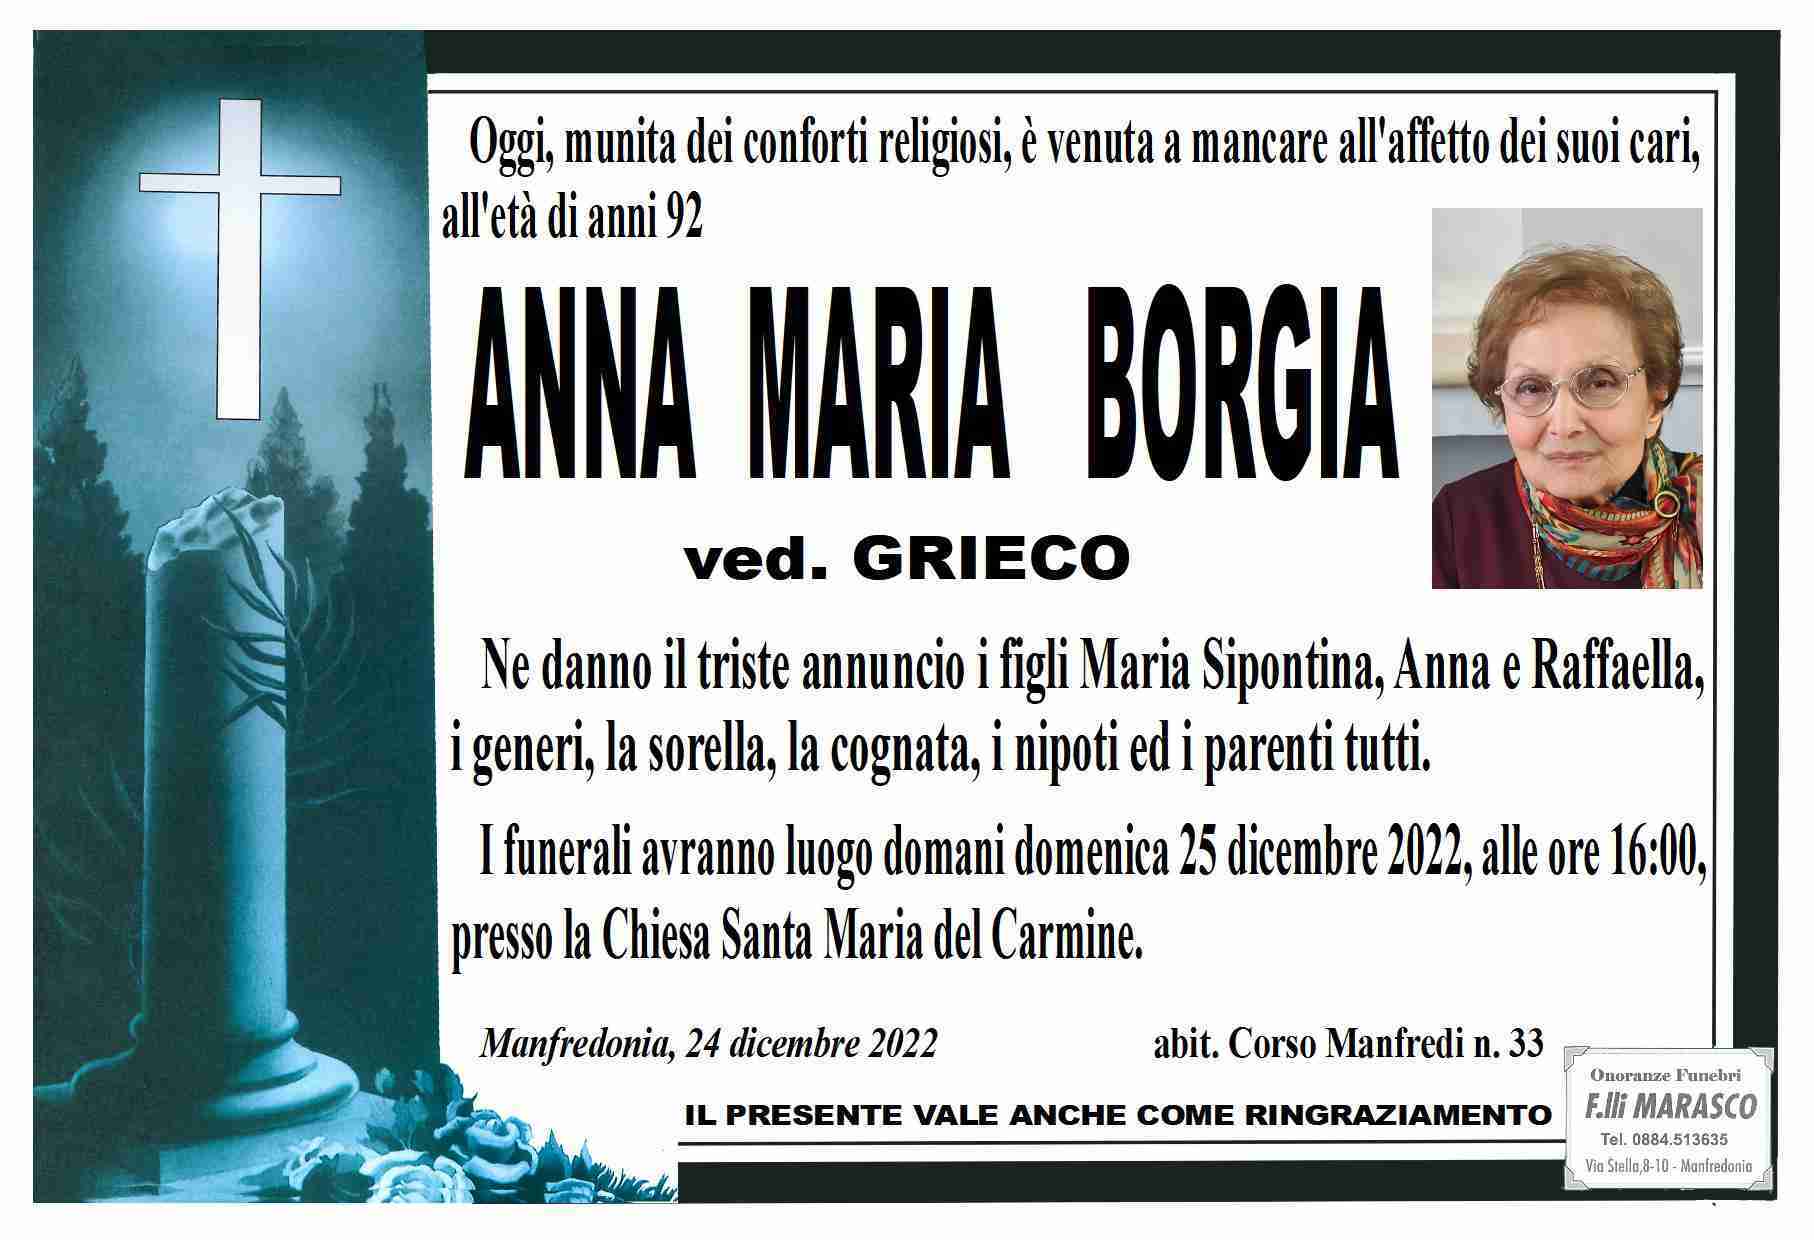 Anna Maria Borgia